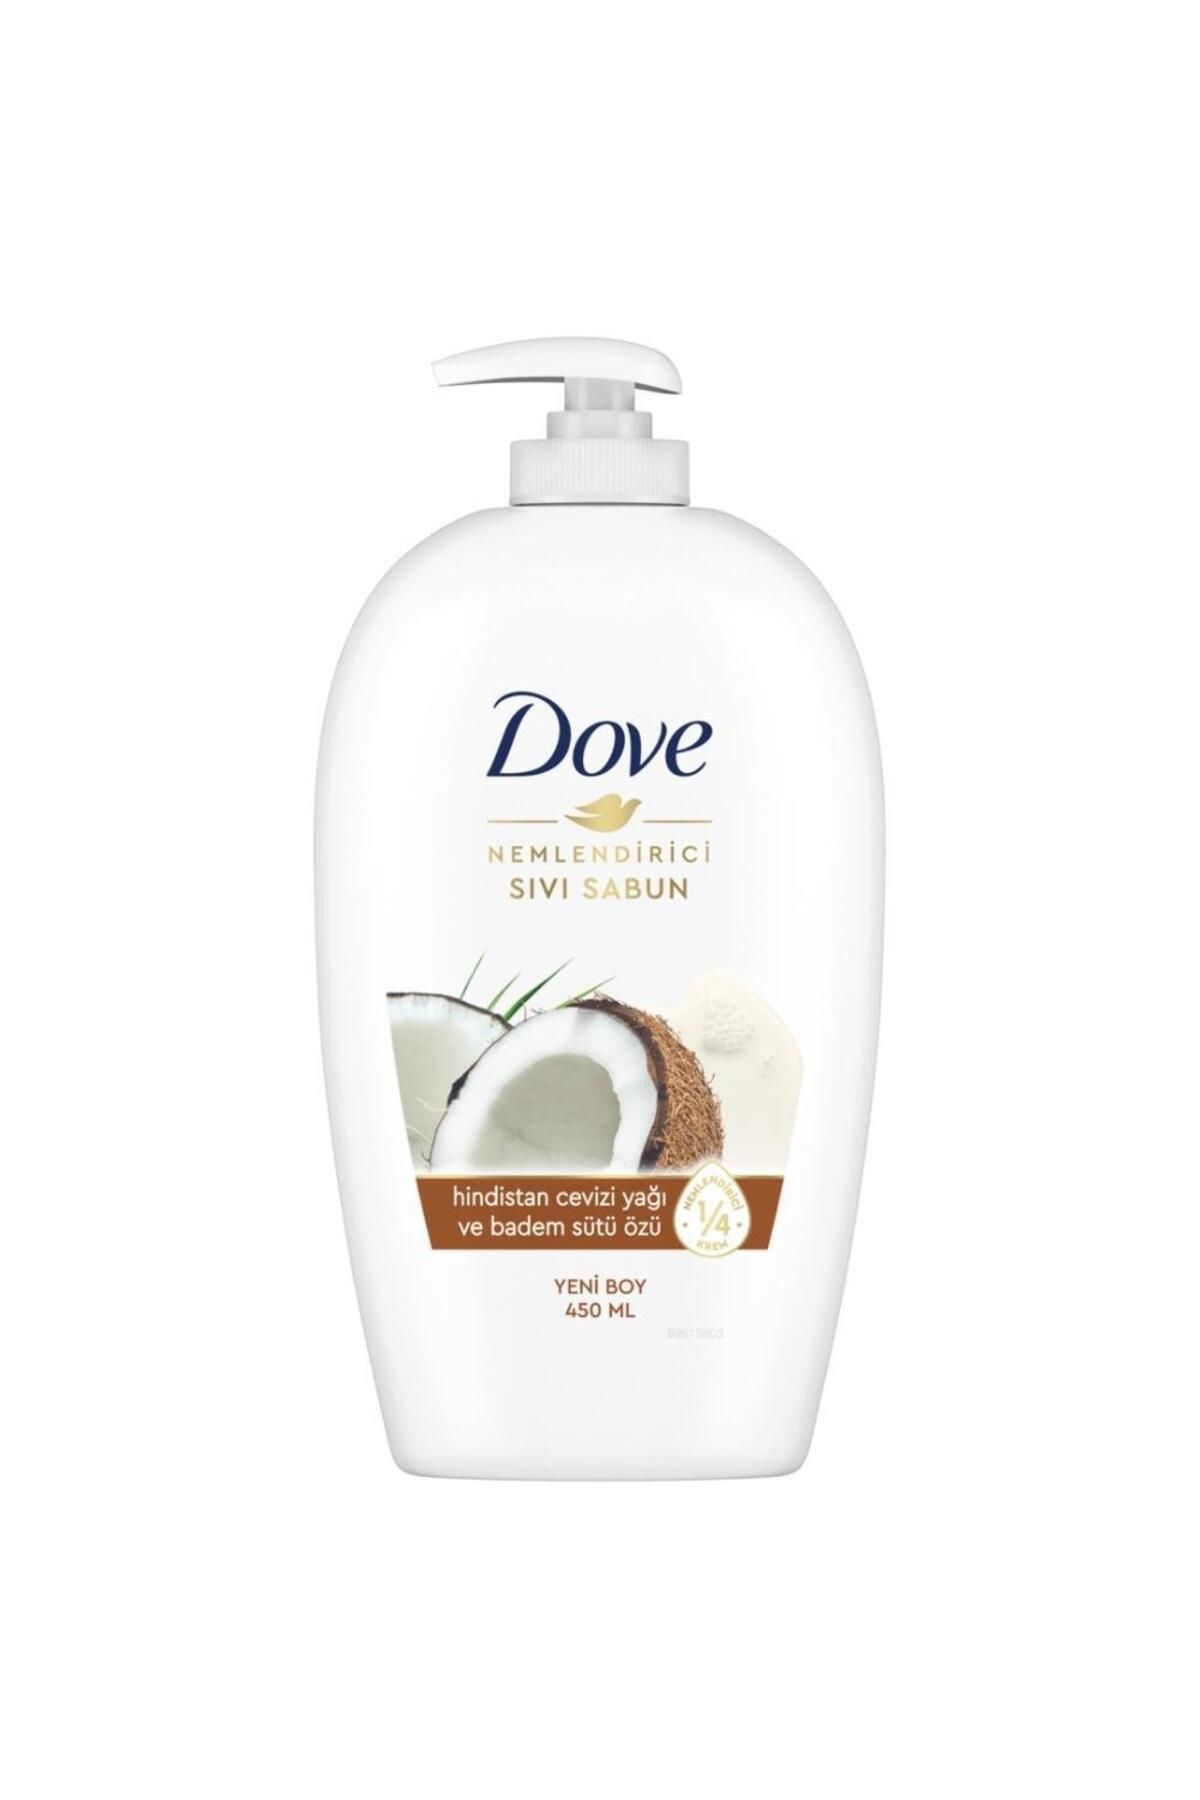 Dove Sıvı Sabun 450 ml. Coconut ve Badem Sütü